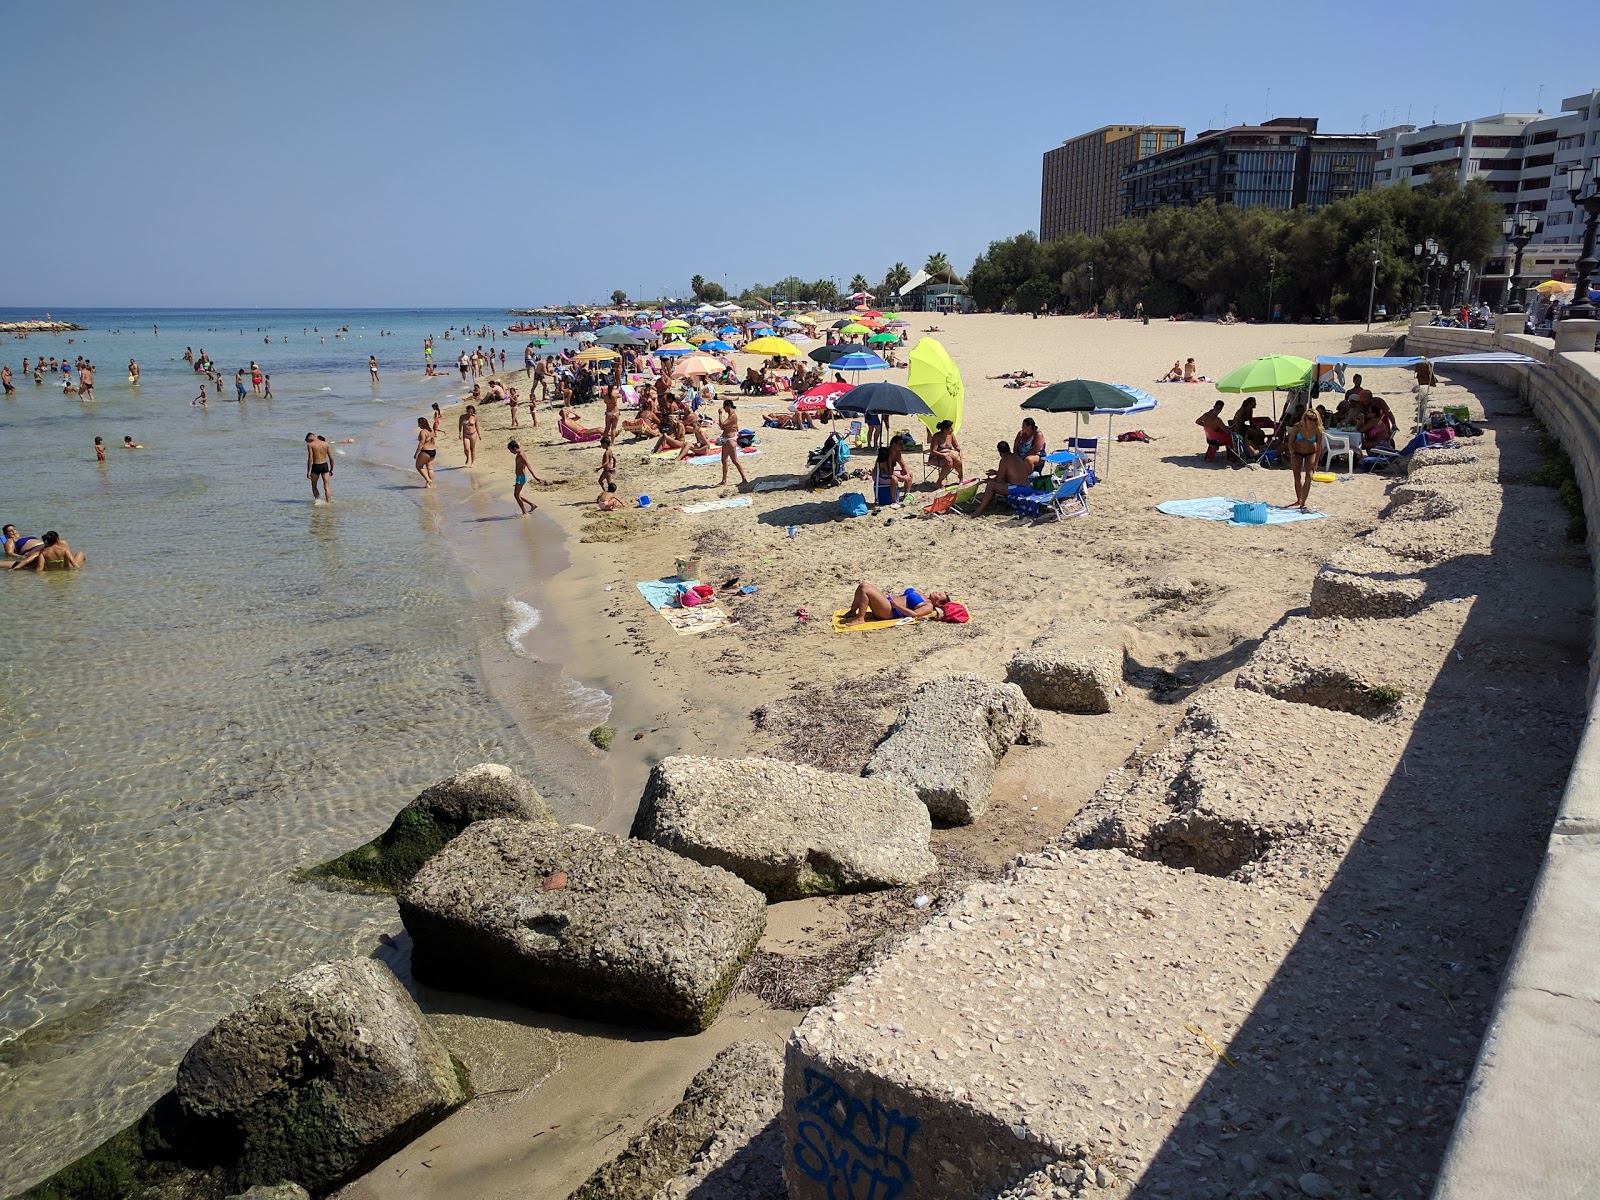 Spiaggia Pane e Pomodoro'in fotoğrafı parlak kum yüzey ile